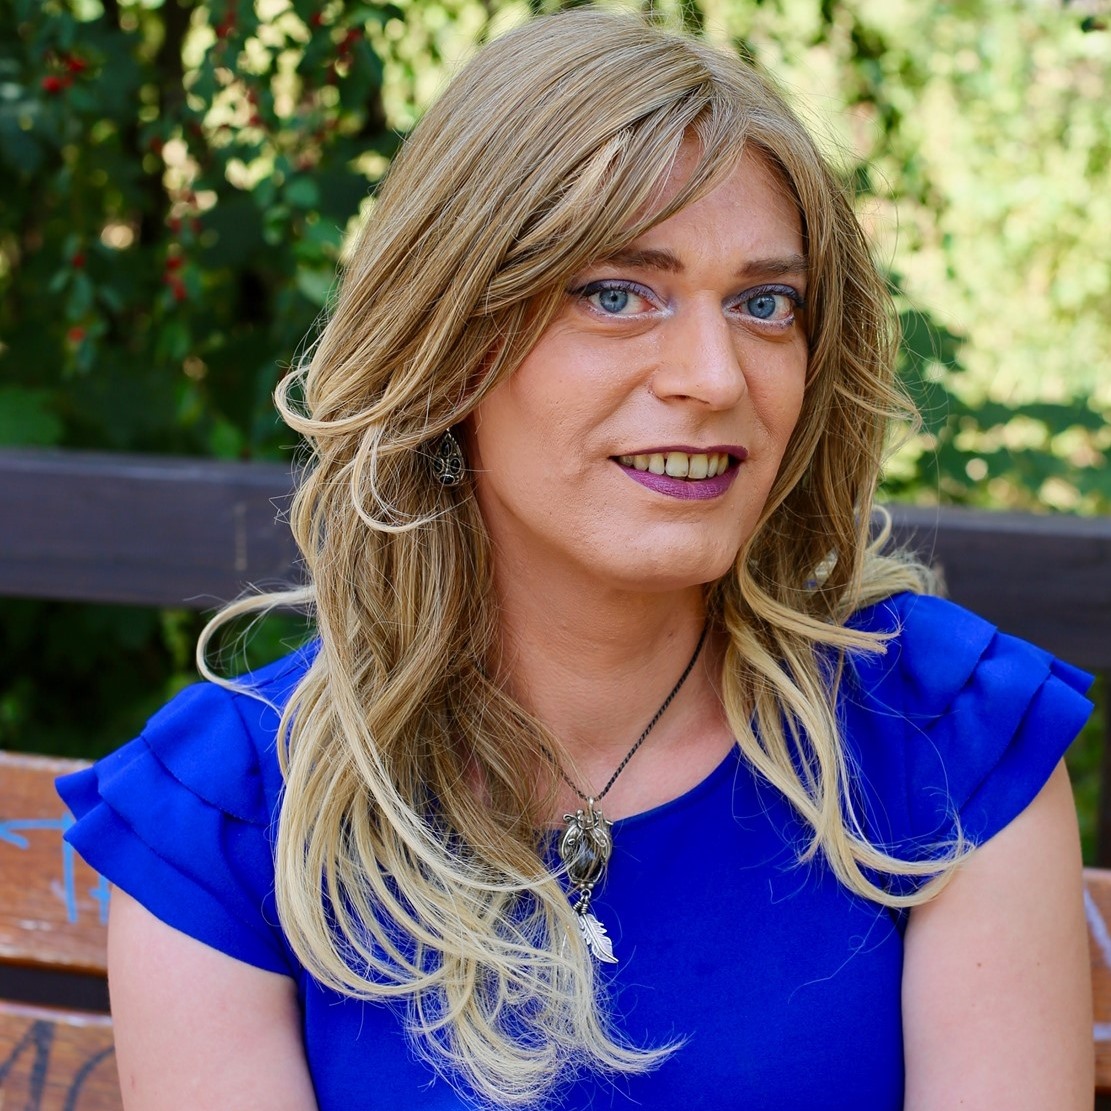 Beválasztották az első nyíltan transznemű képviselőt a Bundestagba